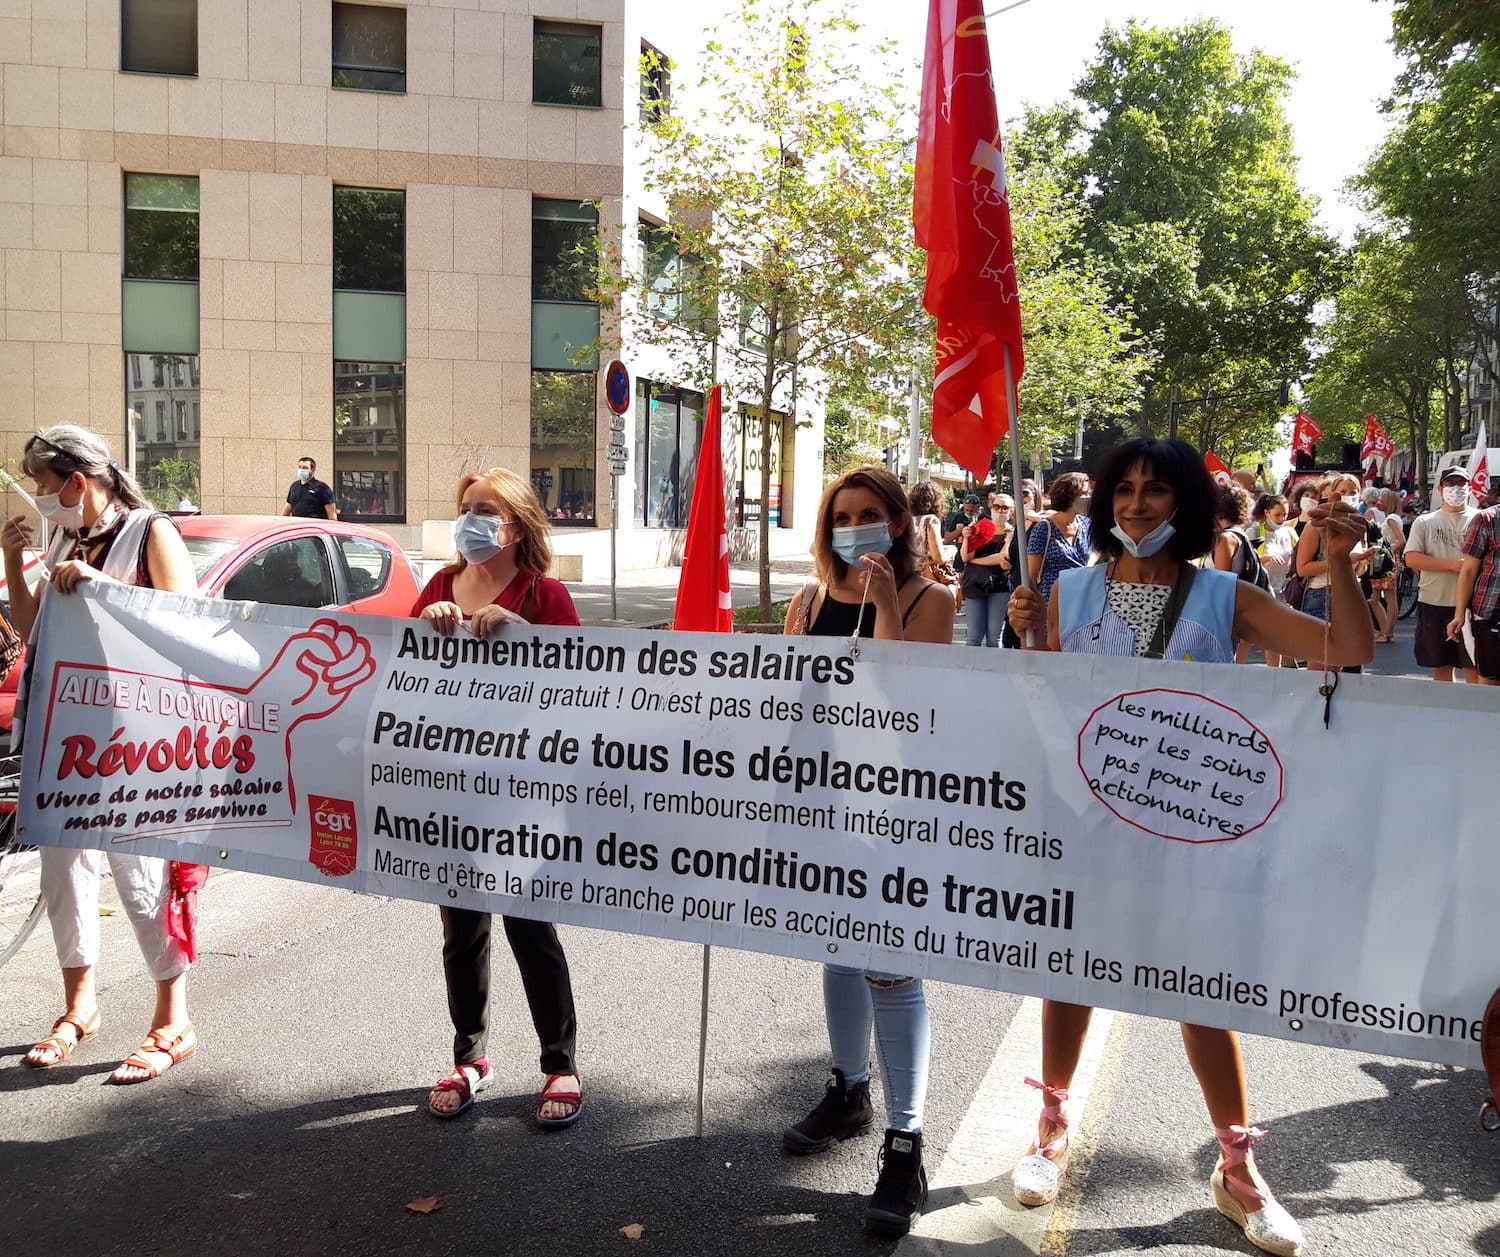 Des aides à domiciles du collectif CGT, à la manifestation interprofessionnelle du 17 septembre 2020 à Lyon. ©LB/rue89lyon